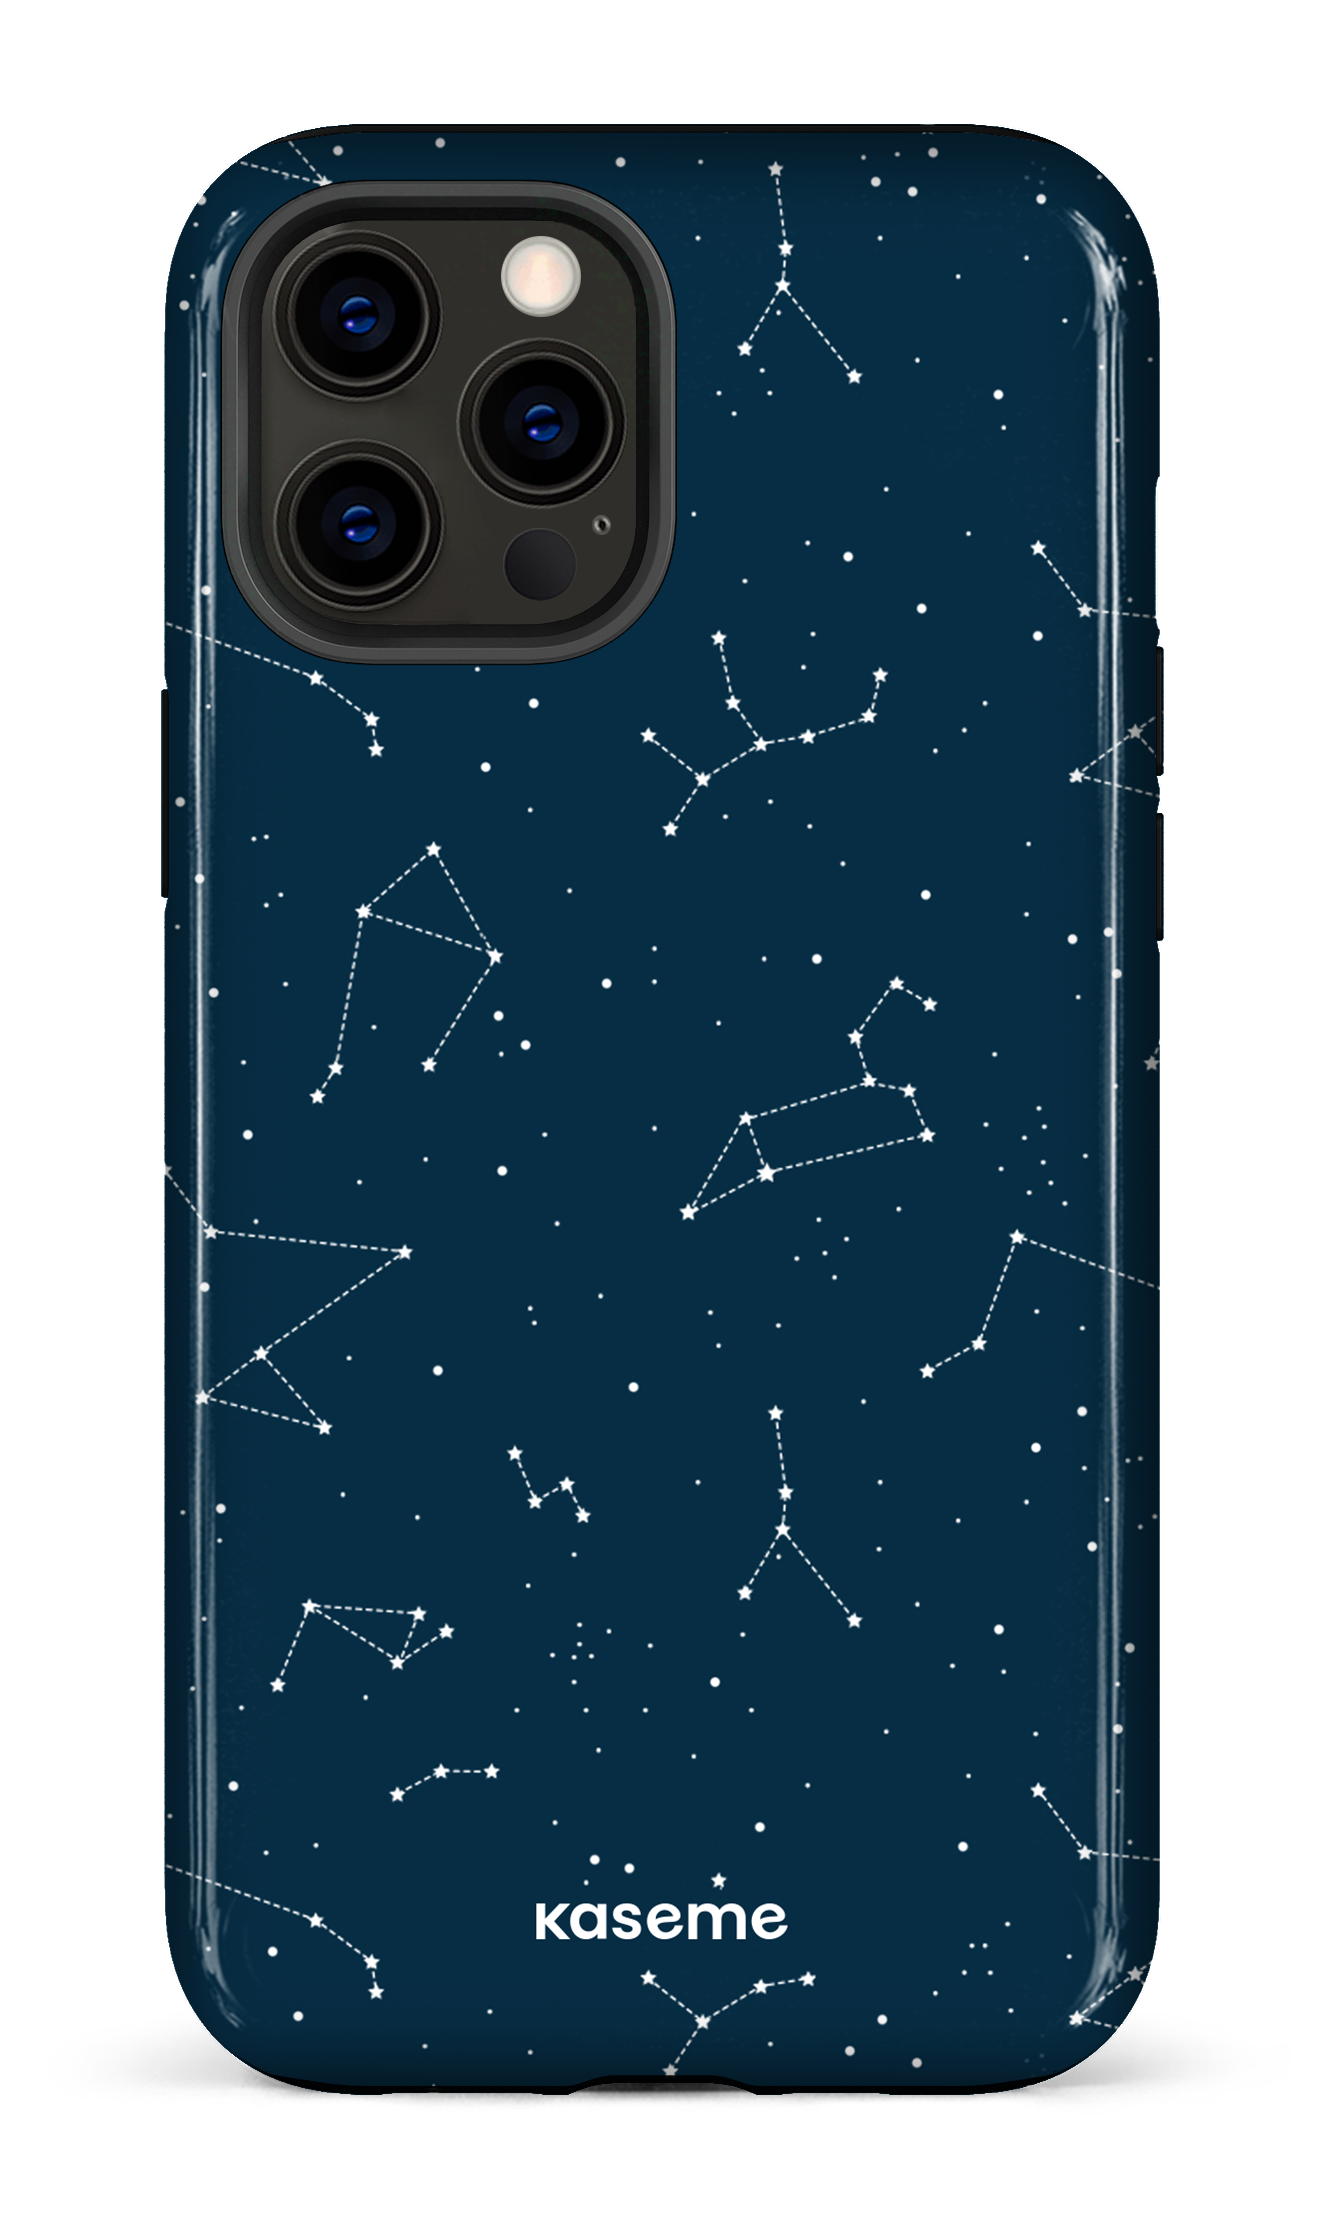 Cosmos - iPhone 12 Pro Max